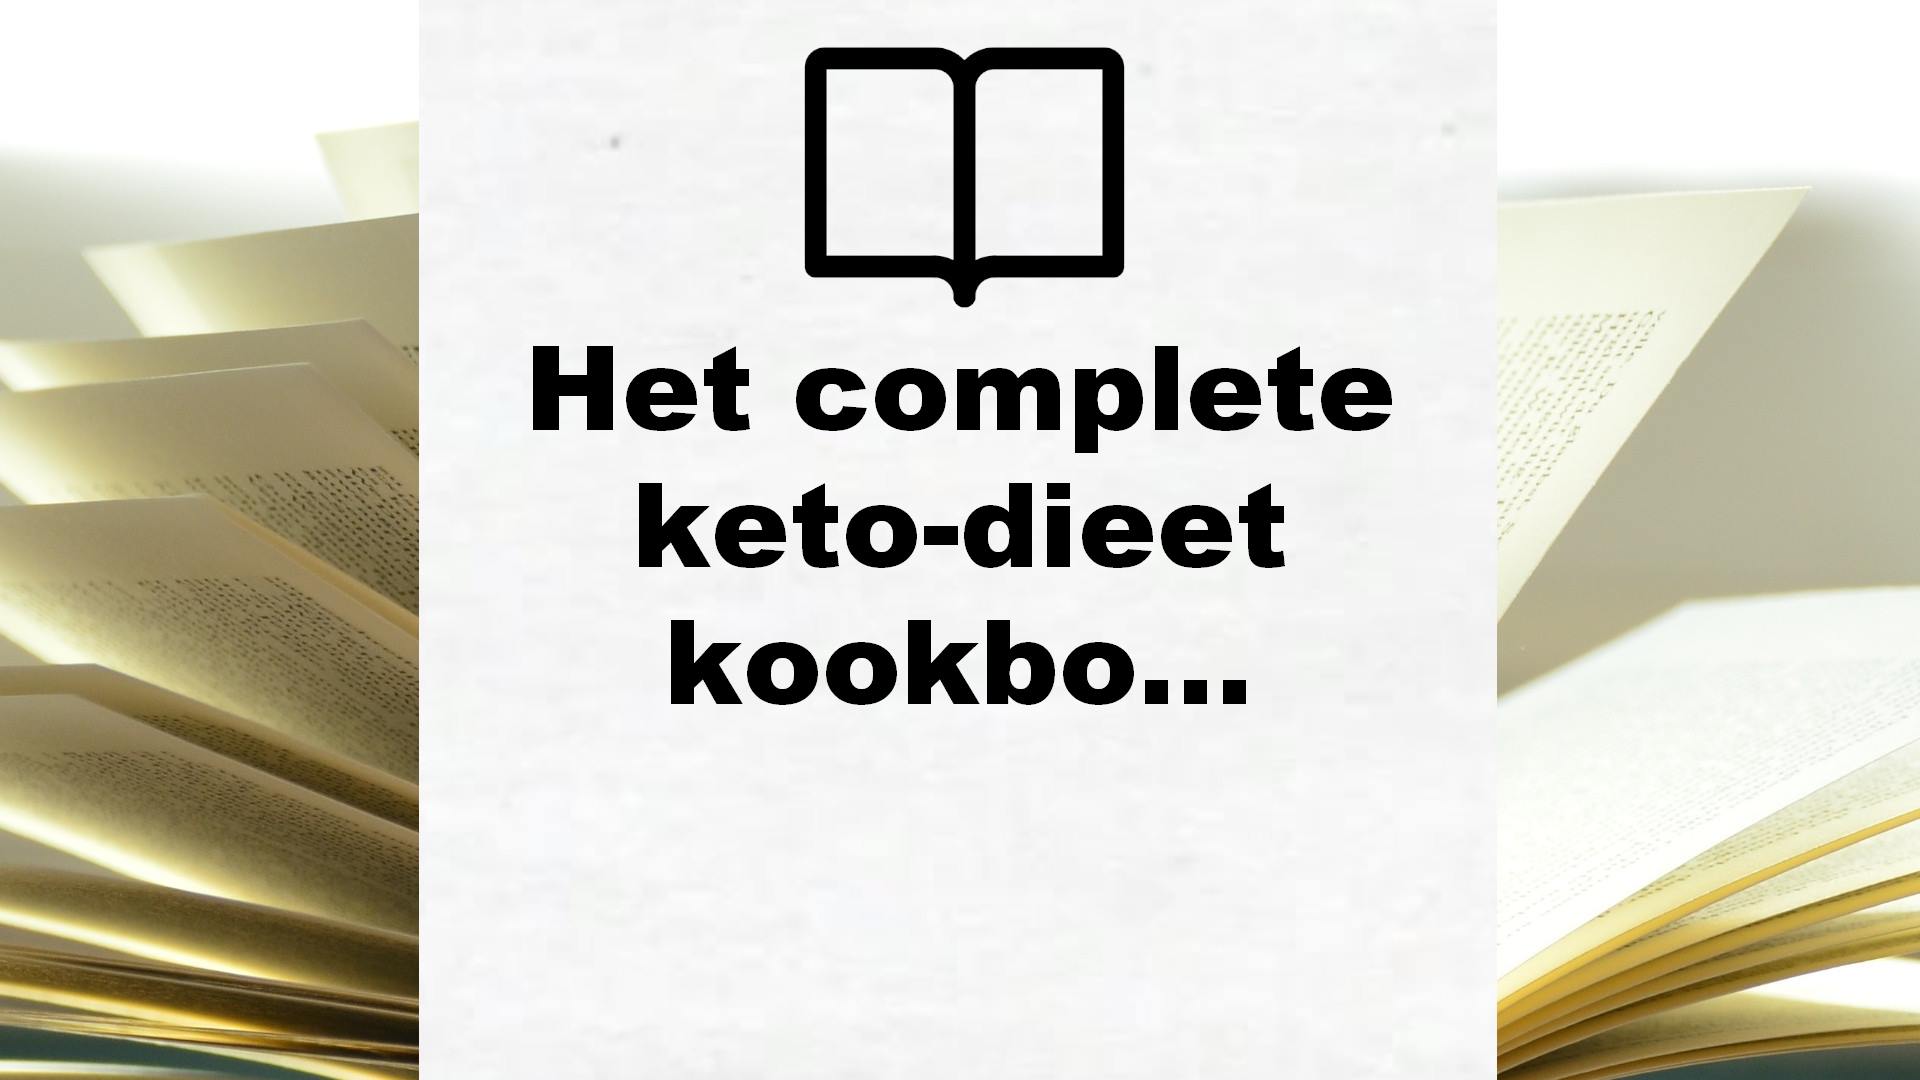 Het complete keto-dieet kookboek: snel vet verbranden en gewicht verliezen met heerlijke, koolhydraatarme recepten – Boekrecensie